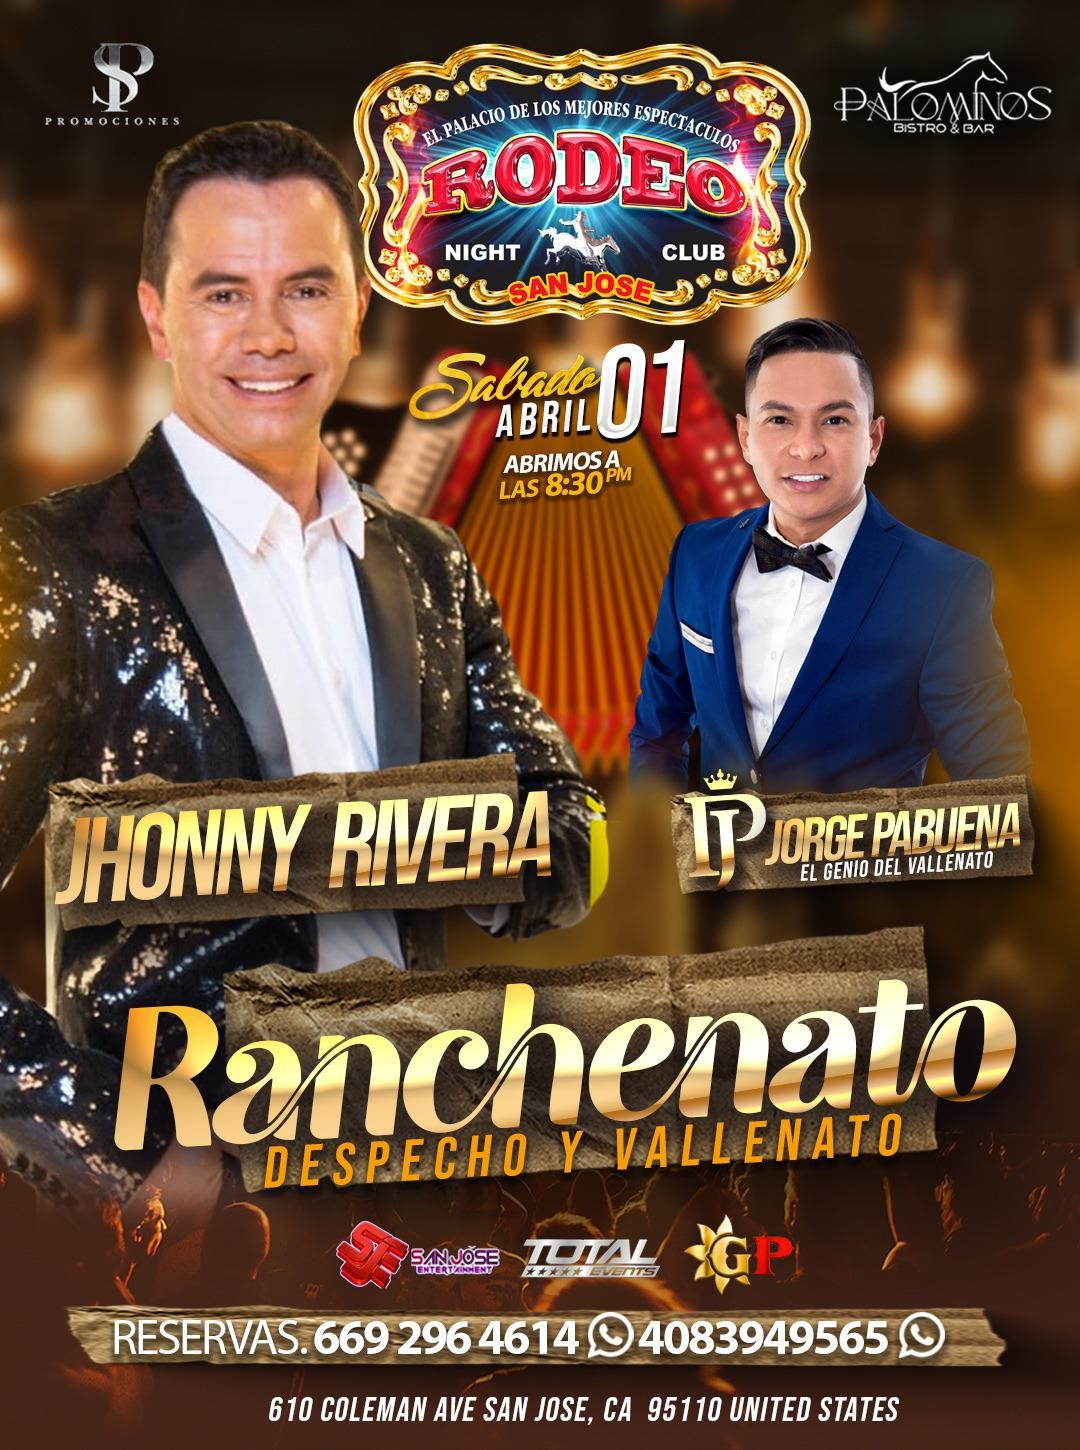 Jhonnny Rivera y Jorge Pabuena  on avr. 01, 20:30@Club Rodeo - Achetez des billets et obtenez des informations surelrodeorio.com sanjoseentertainment